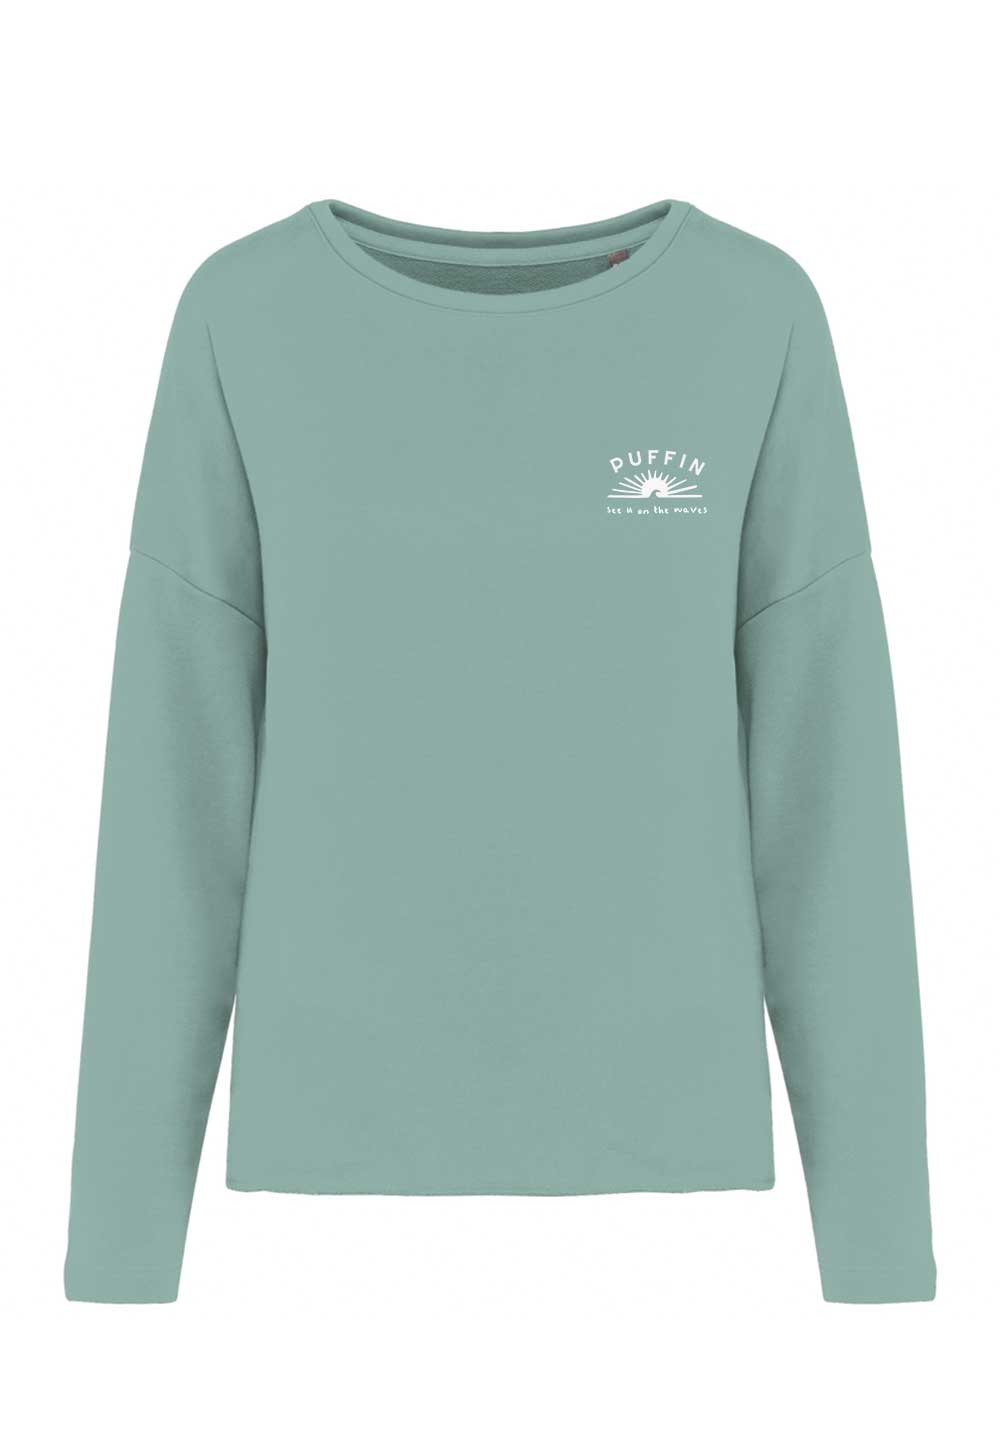 Green water Positive Sweatshirt